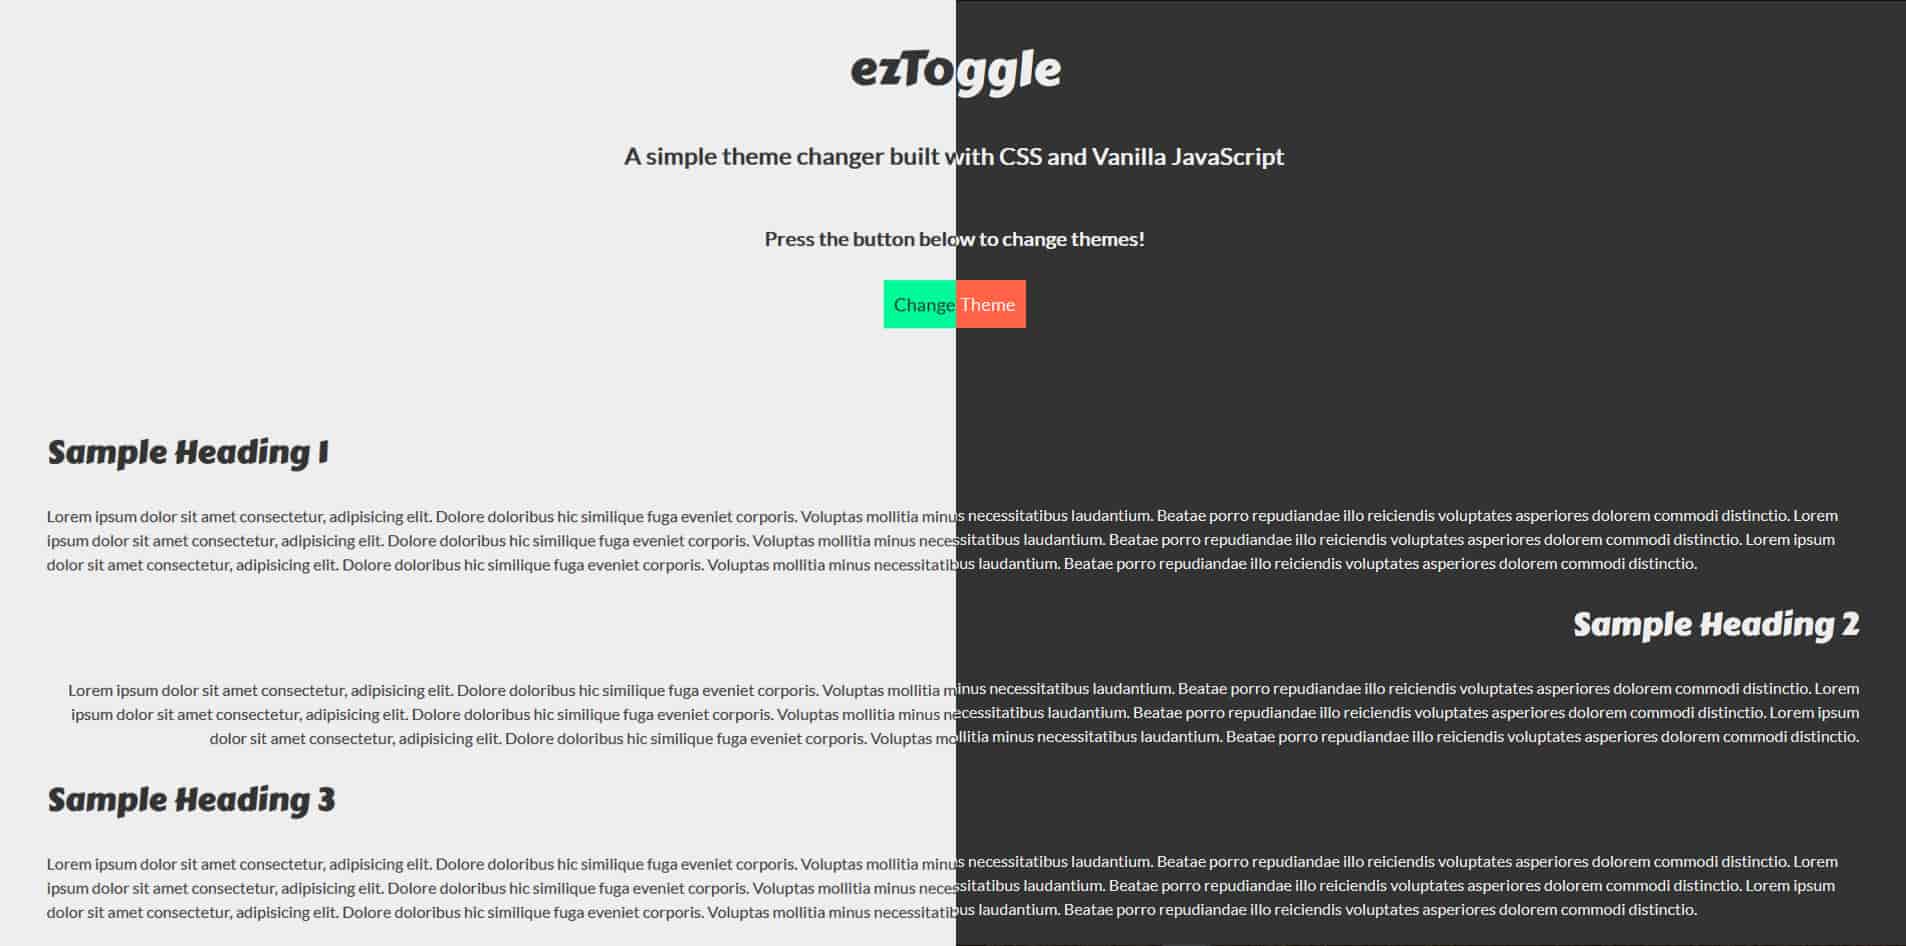 ezToggle homepage